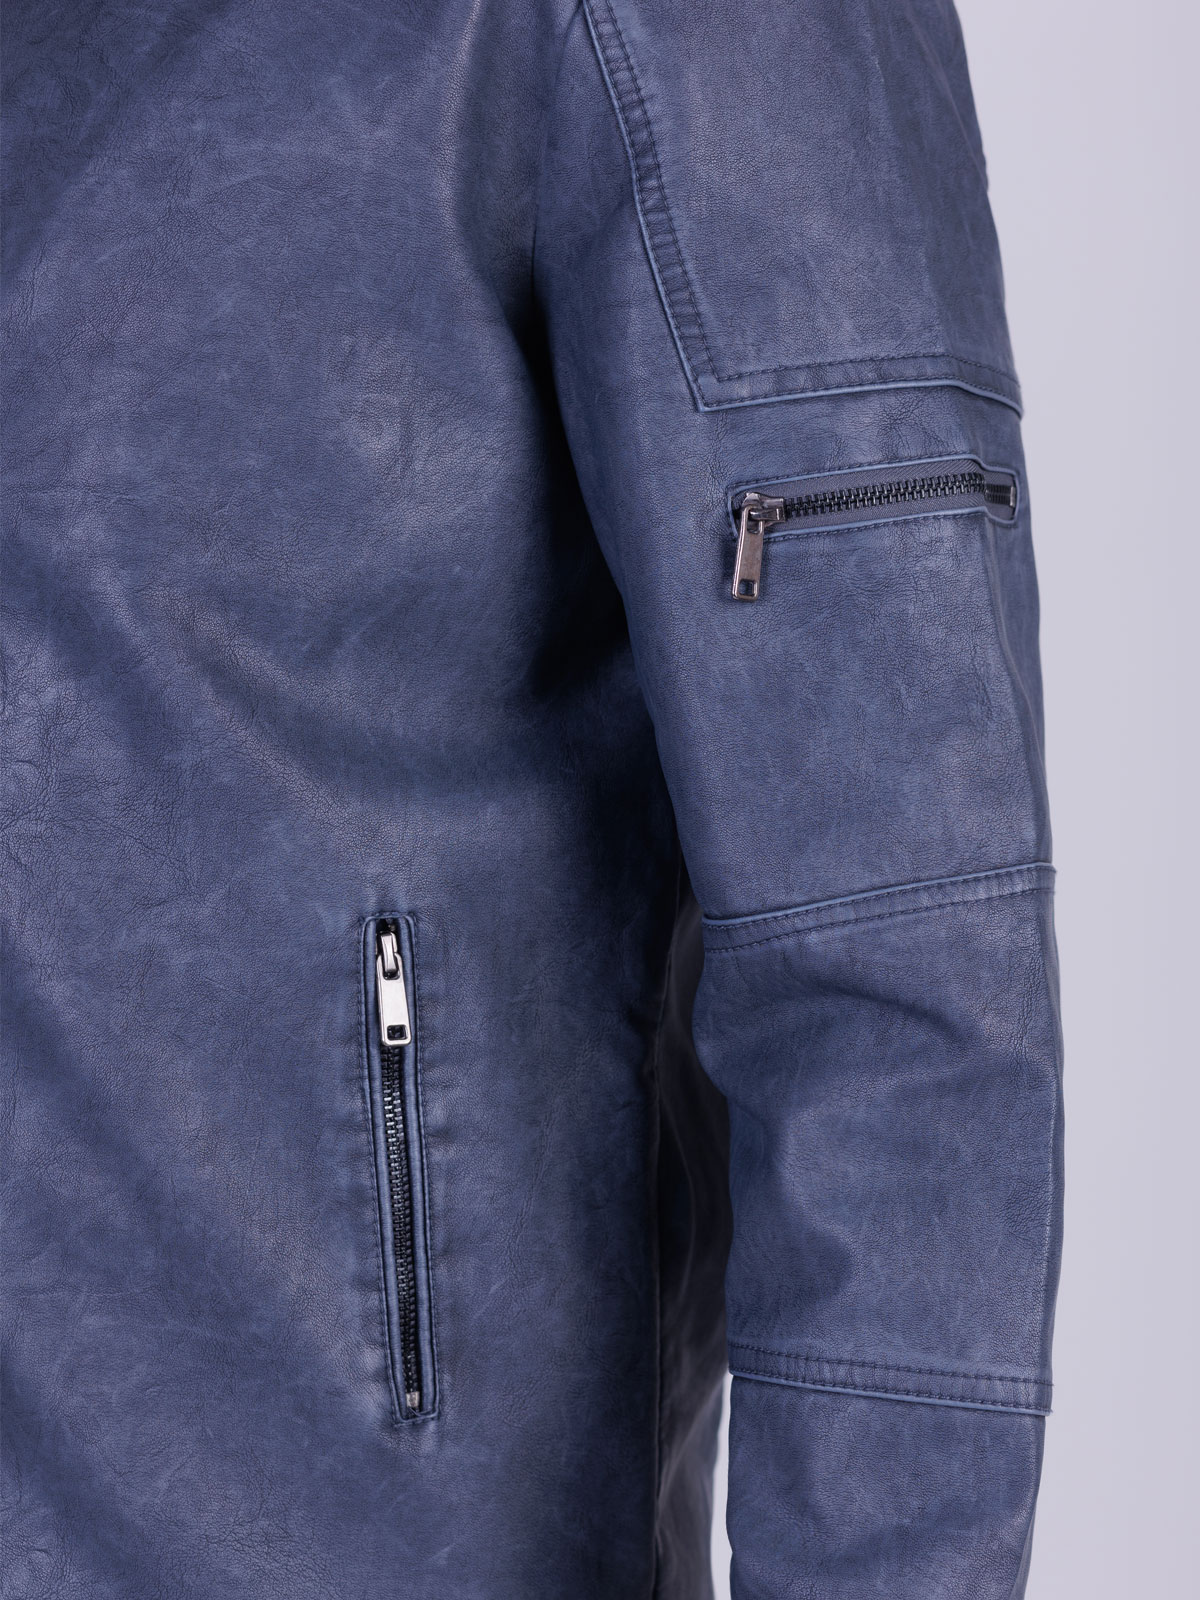 Leather jacket blue melange - 65126 € 65.80 img3